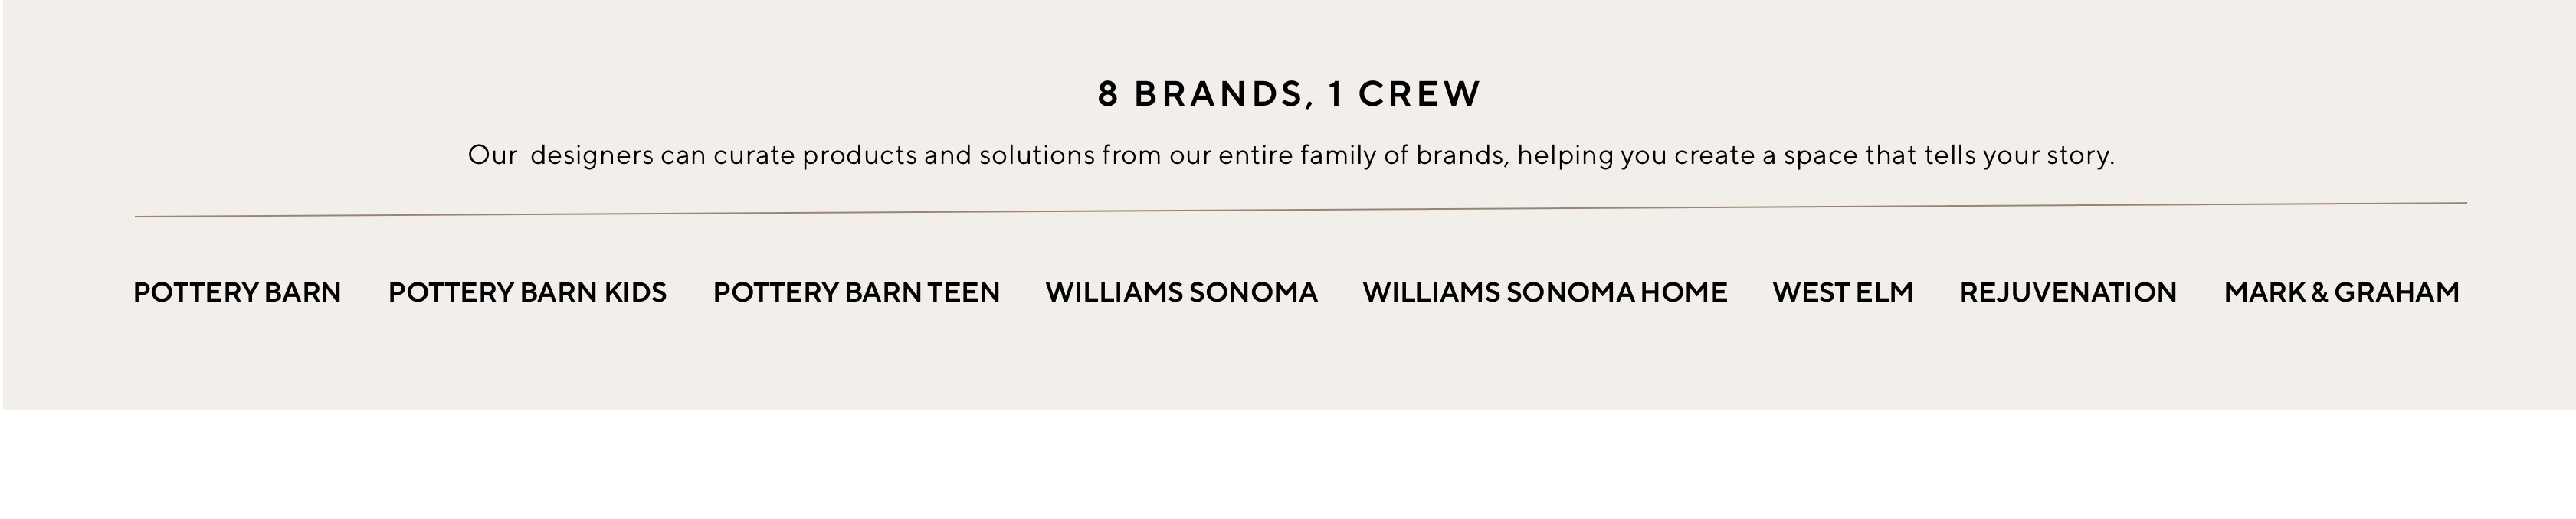 8 Brands, 1 Crew